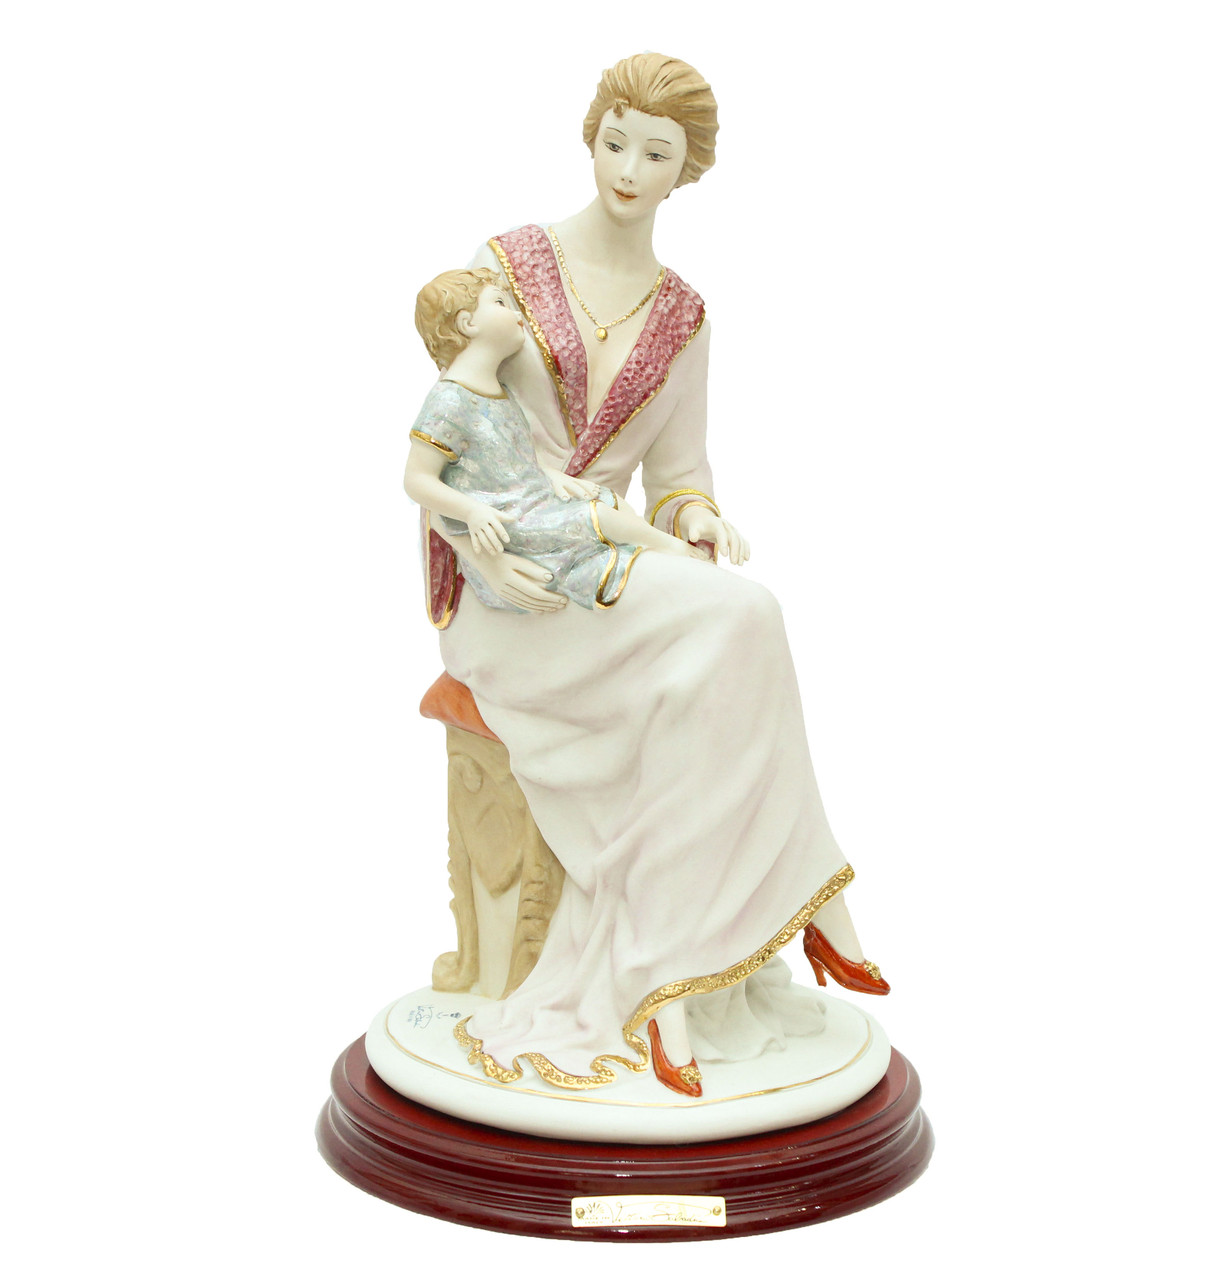 Фарфоровая статуэтка Материнство. Ручная работа, Италия